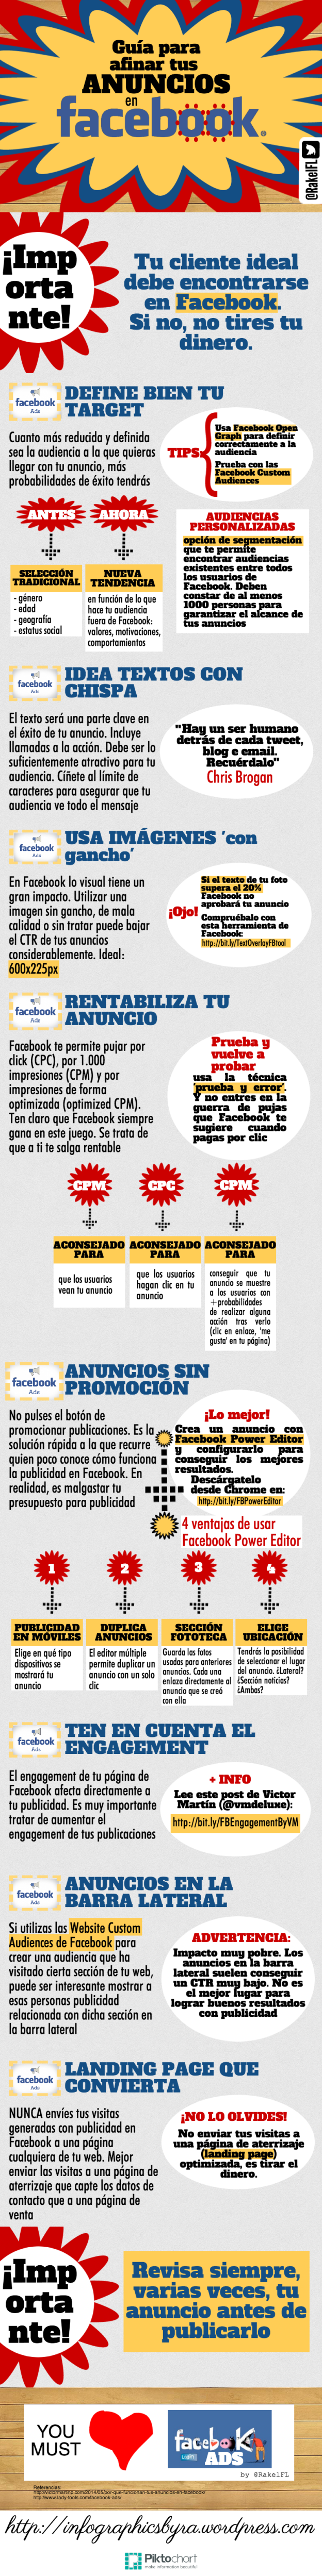 Guía para afinar tus anuncios de Facebook, infografía de Rakel Felipe